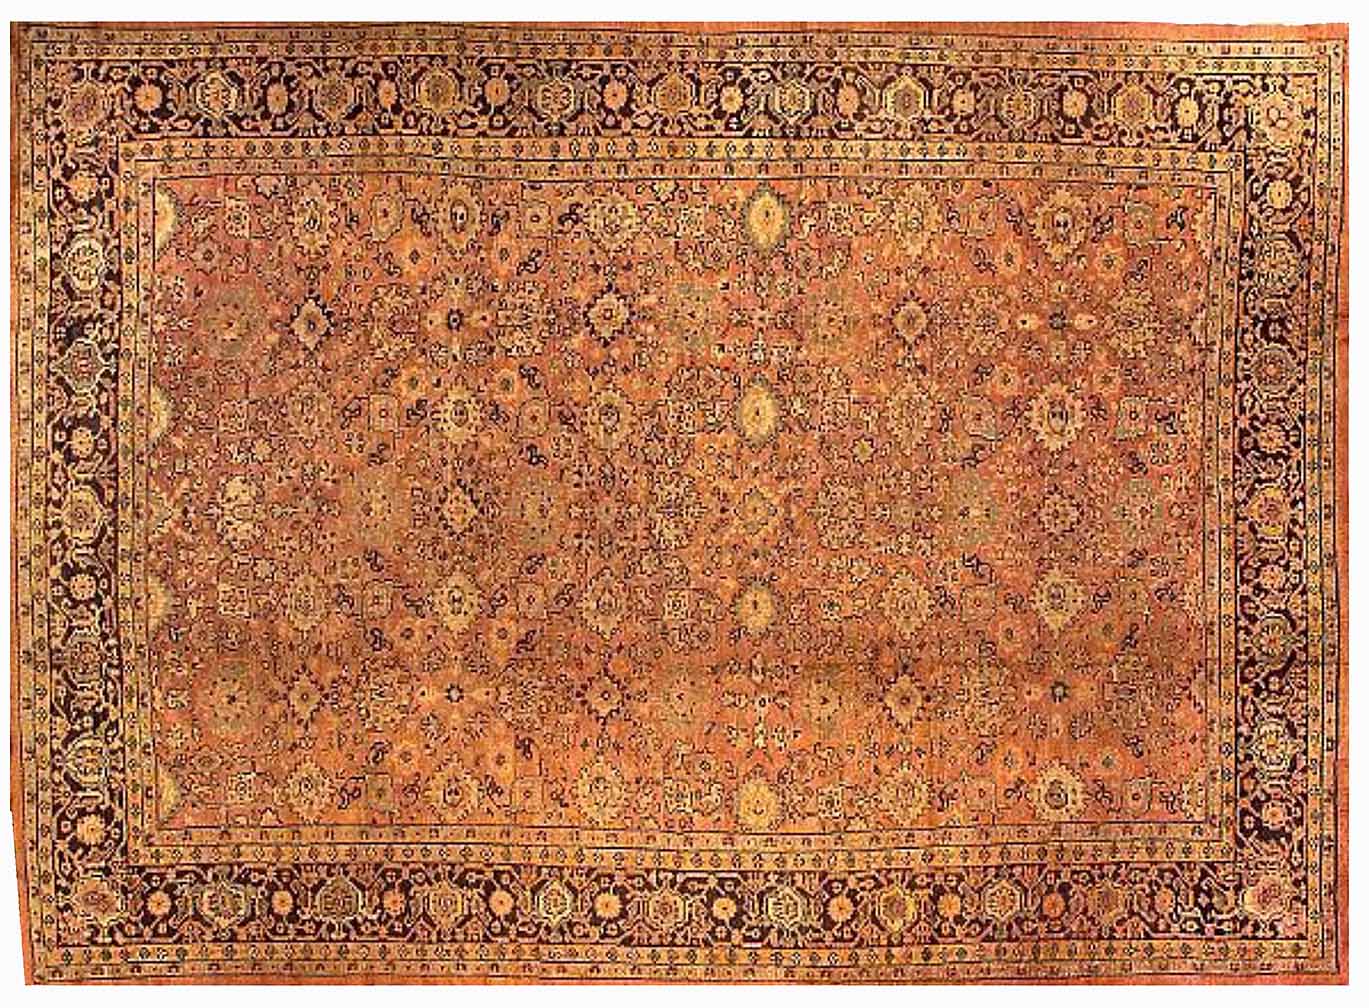 Antique mahal Carpet - # 54462